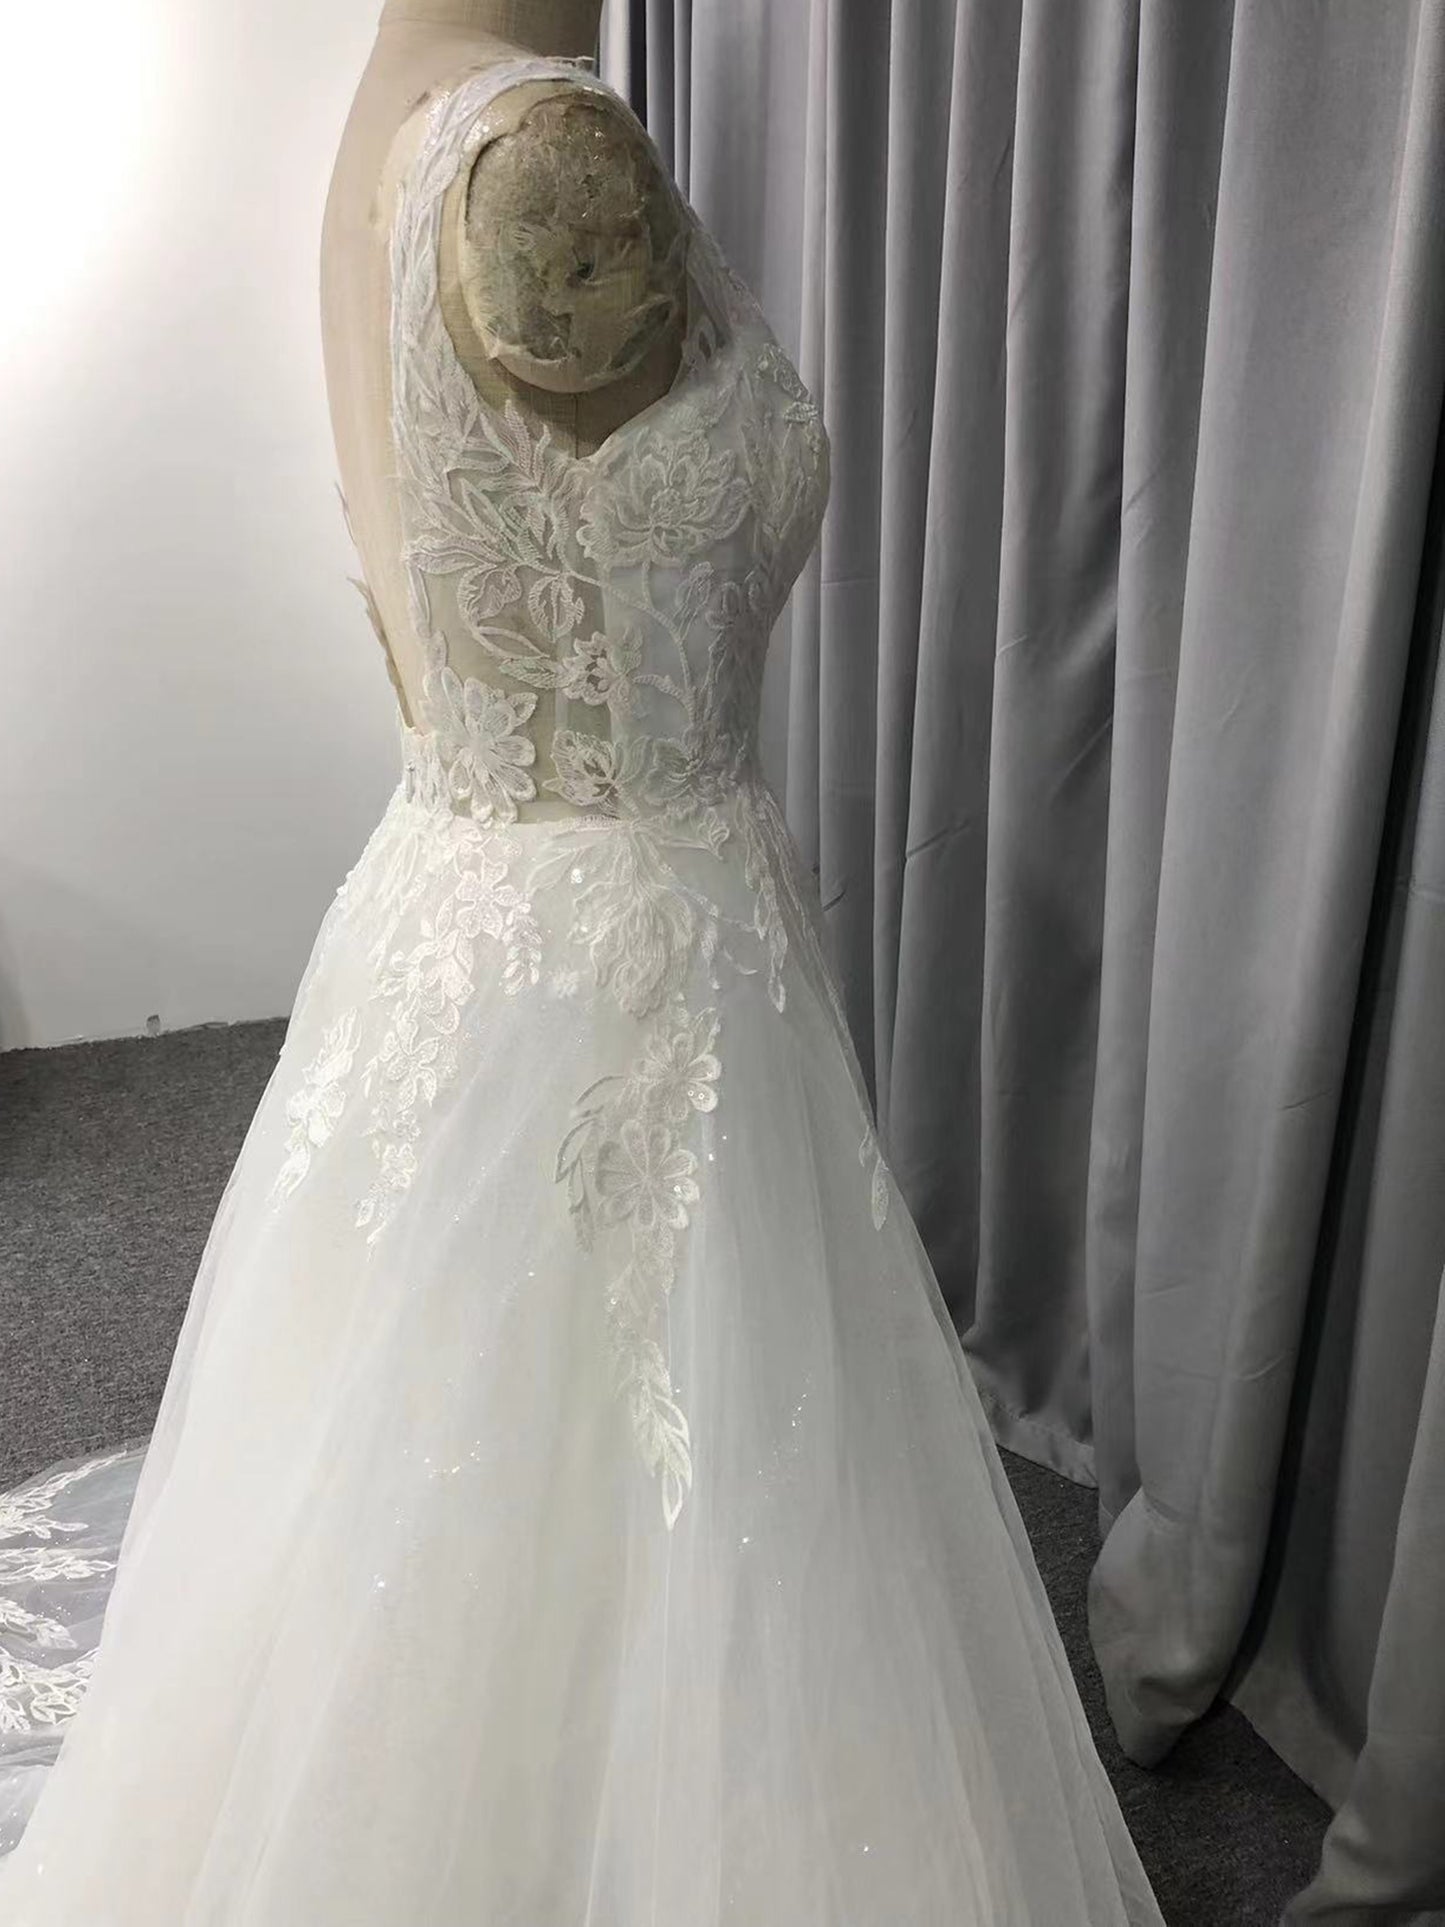 Elegant V-neck Court Train Sleeveless Tulle Wedding Dresses With Lace